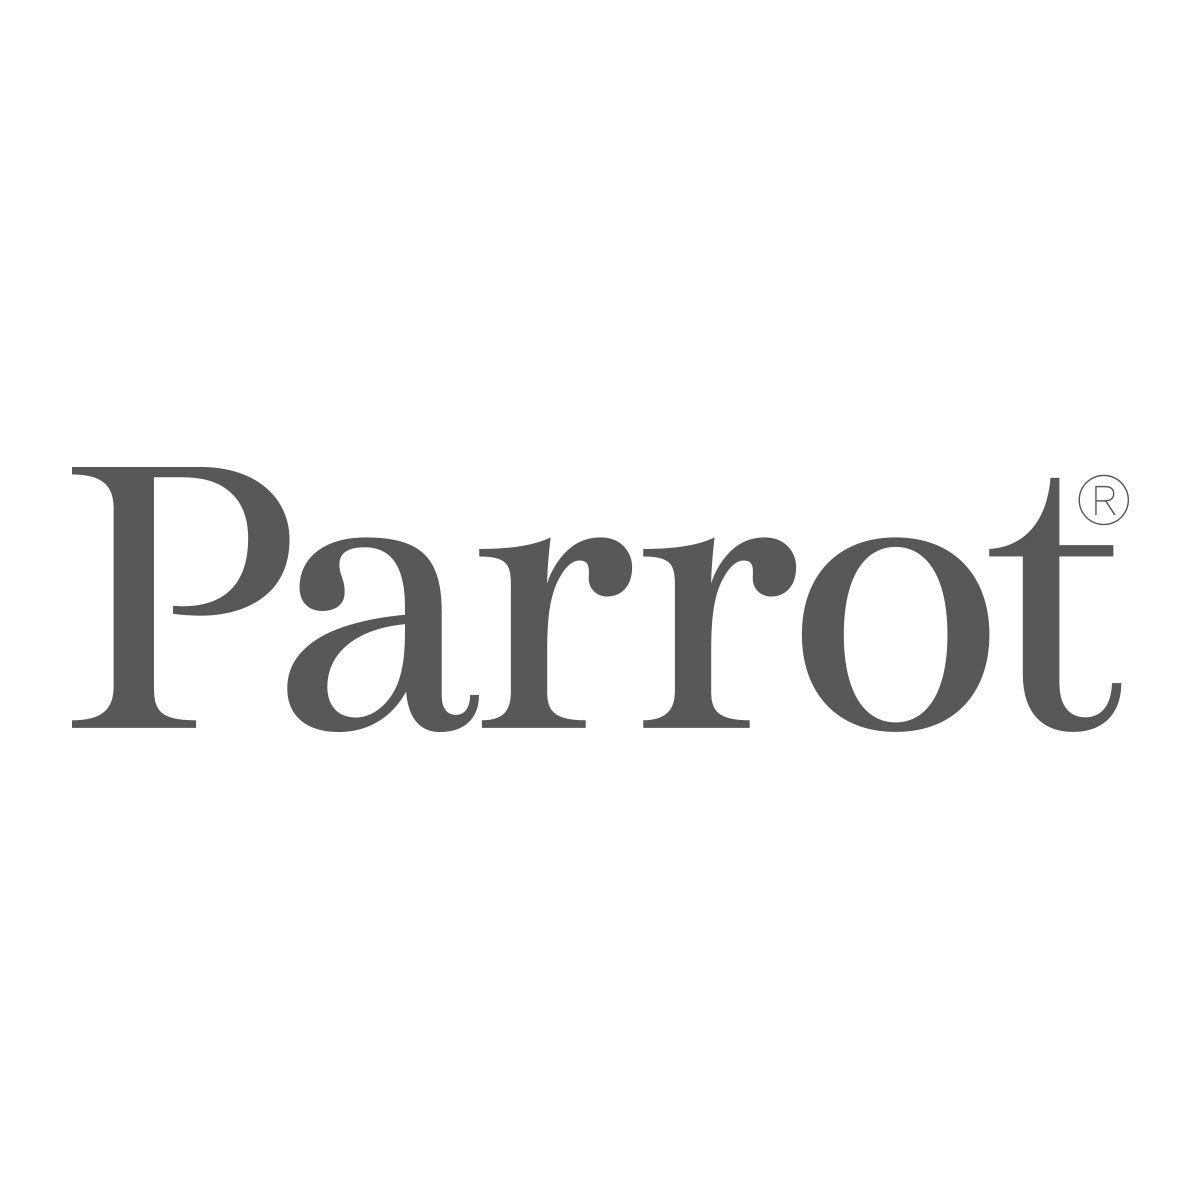 Parrot_logo_placeholder.jpg